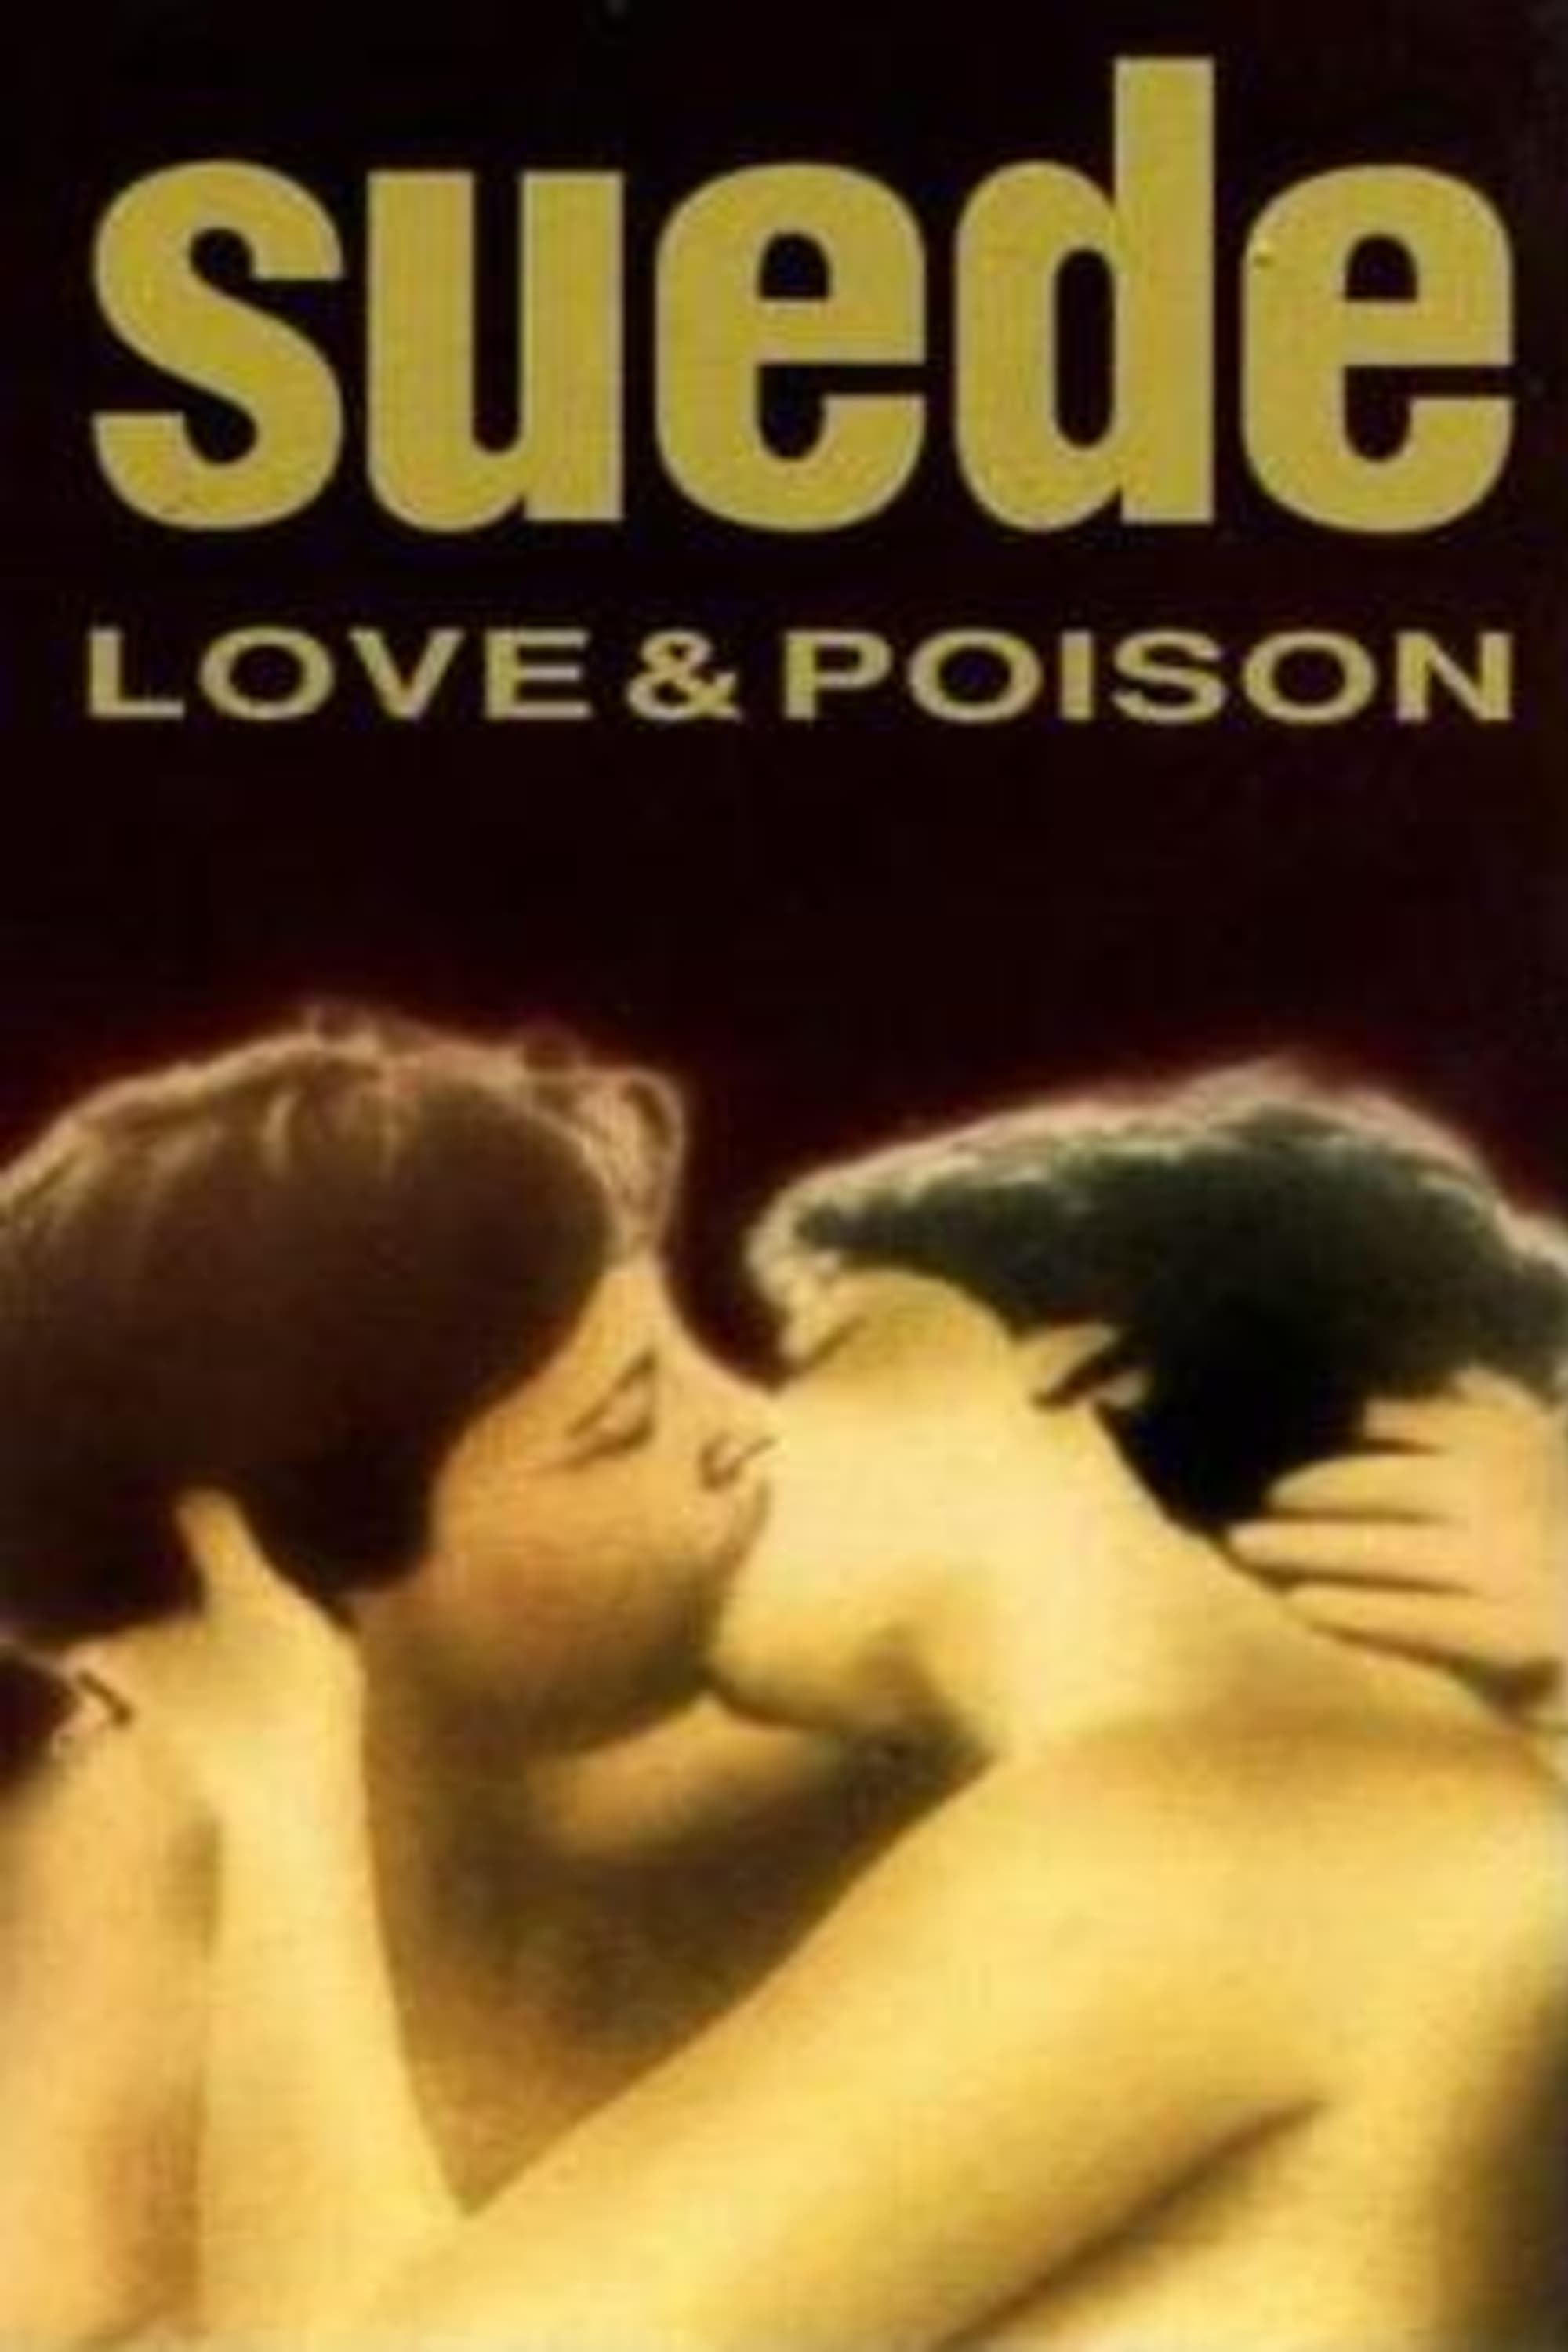 Suede - Love & Poison